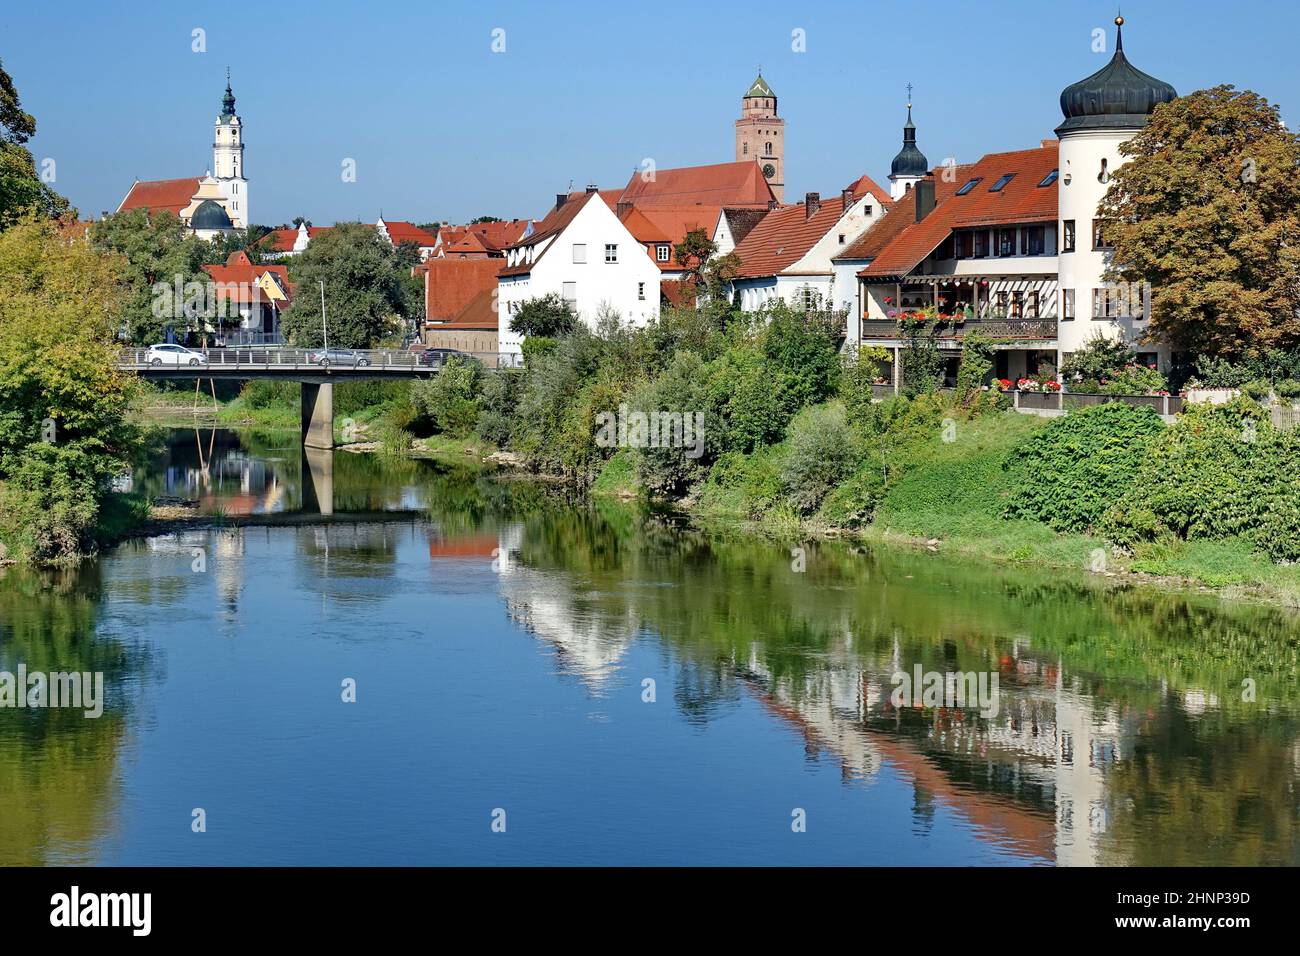 Germania, Baviera, Donauwörth, sede della contea, monastero benedettino, Liebfrauenmünster, fiume Wörnitz, viaggio Foto Stock